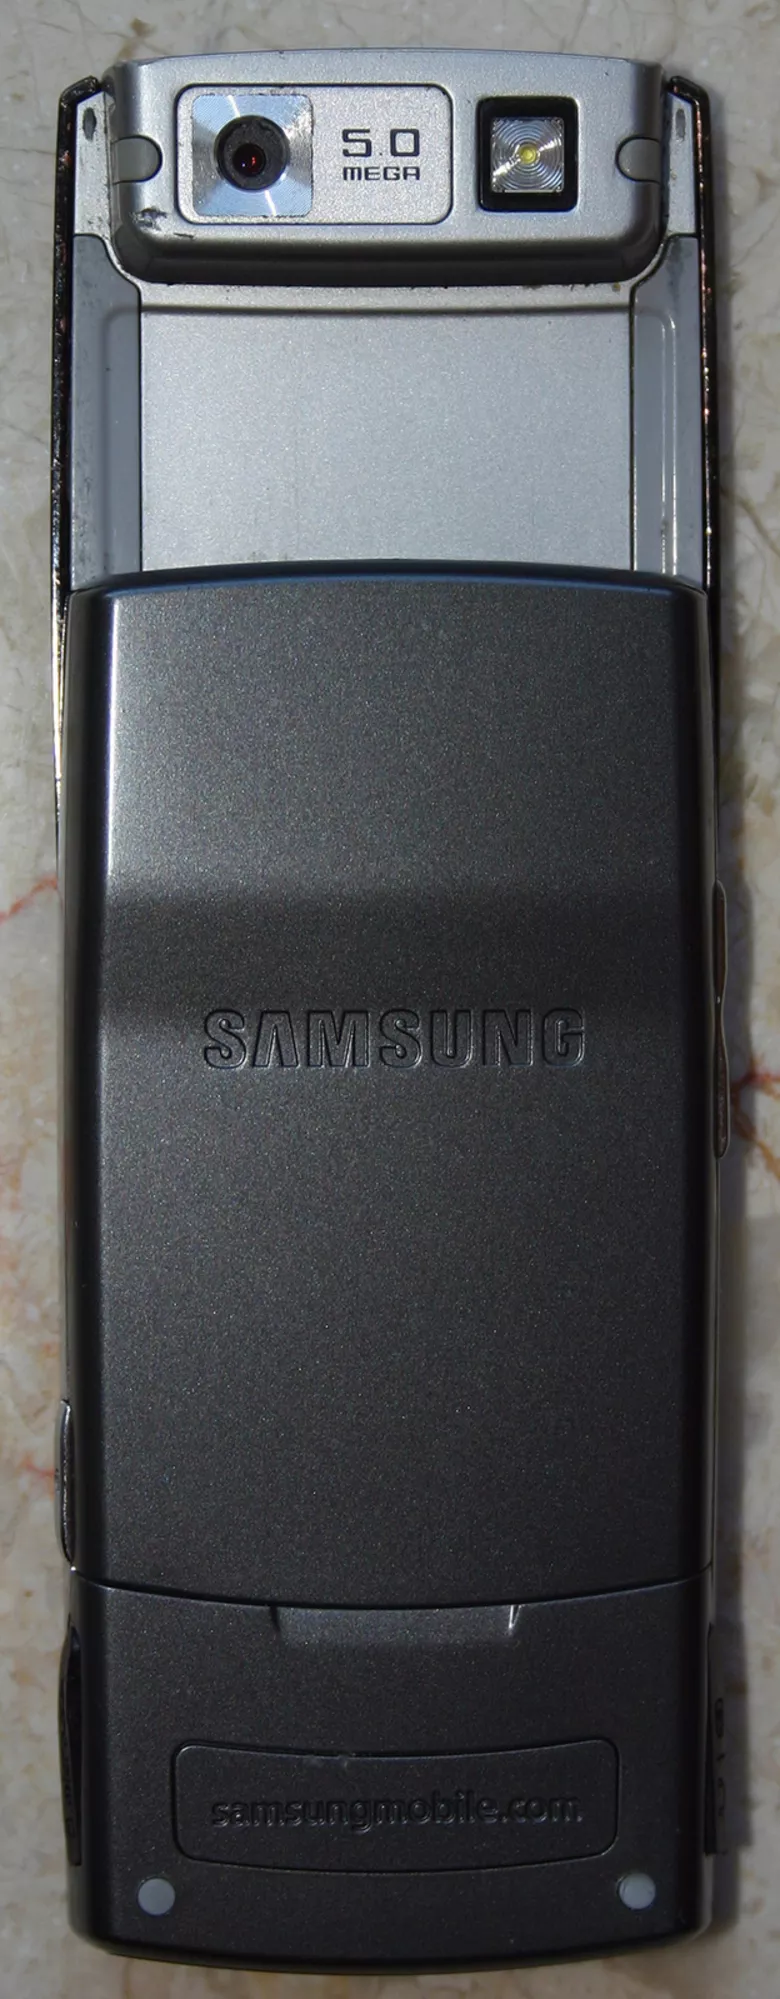 Samsung G600 2